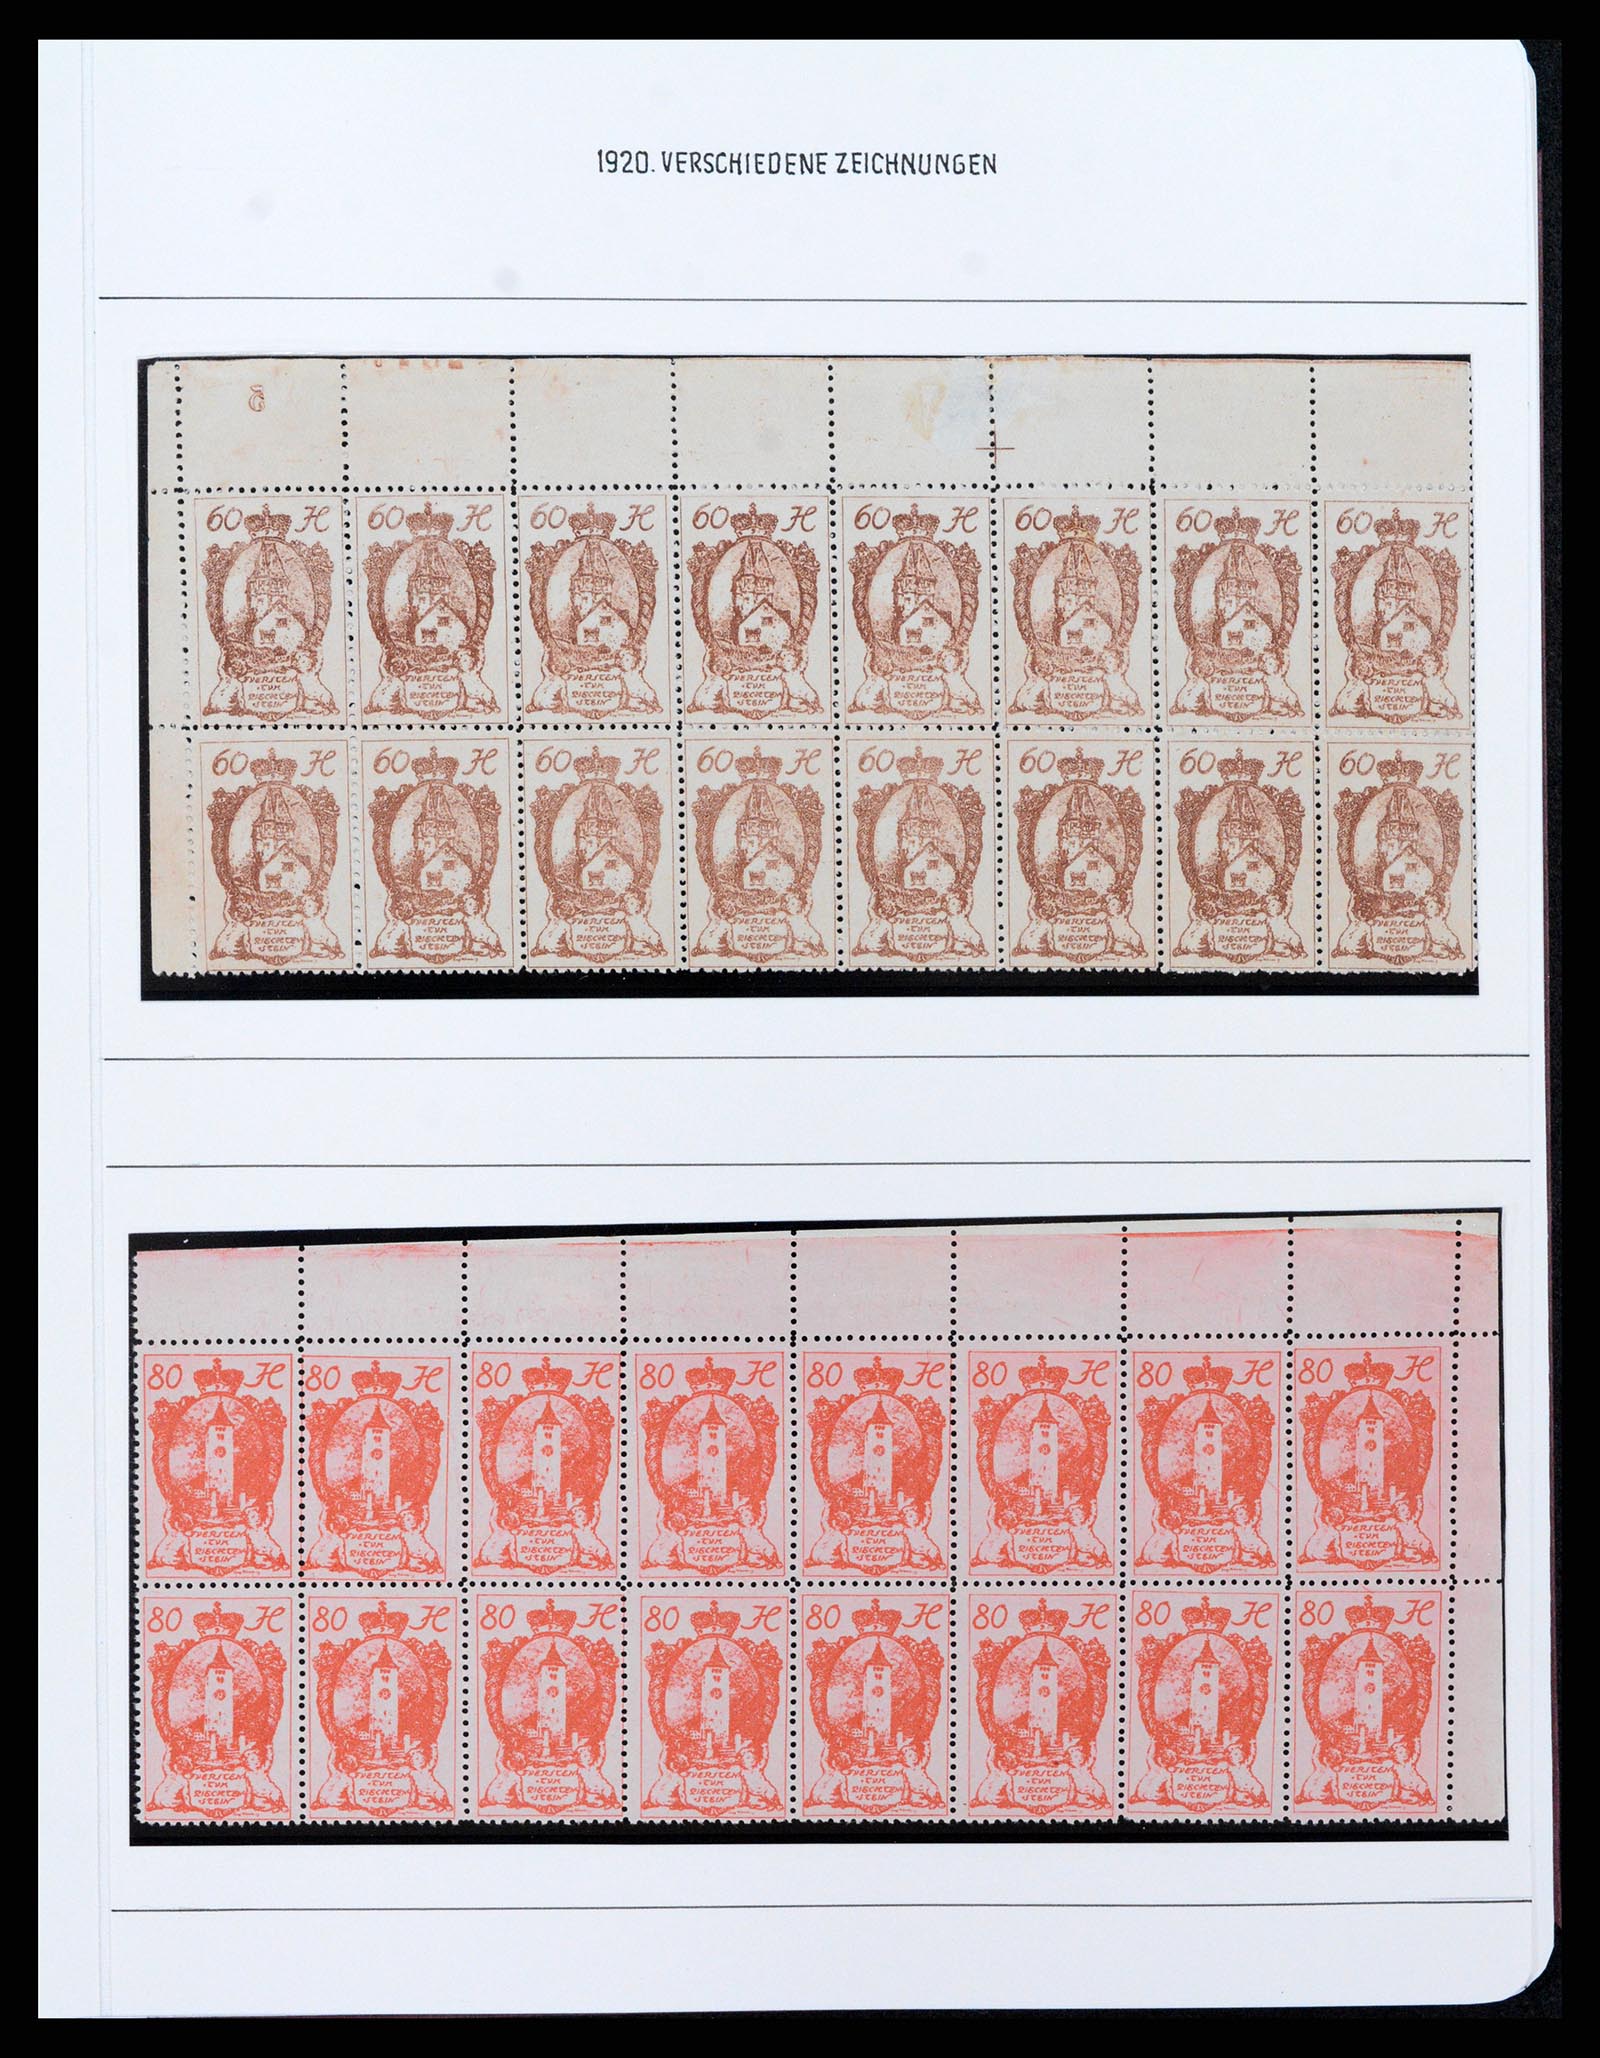 37150 0090 - Stamp collection 37150 Liechtenstein supercollection 1912-1962.